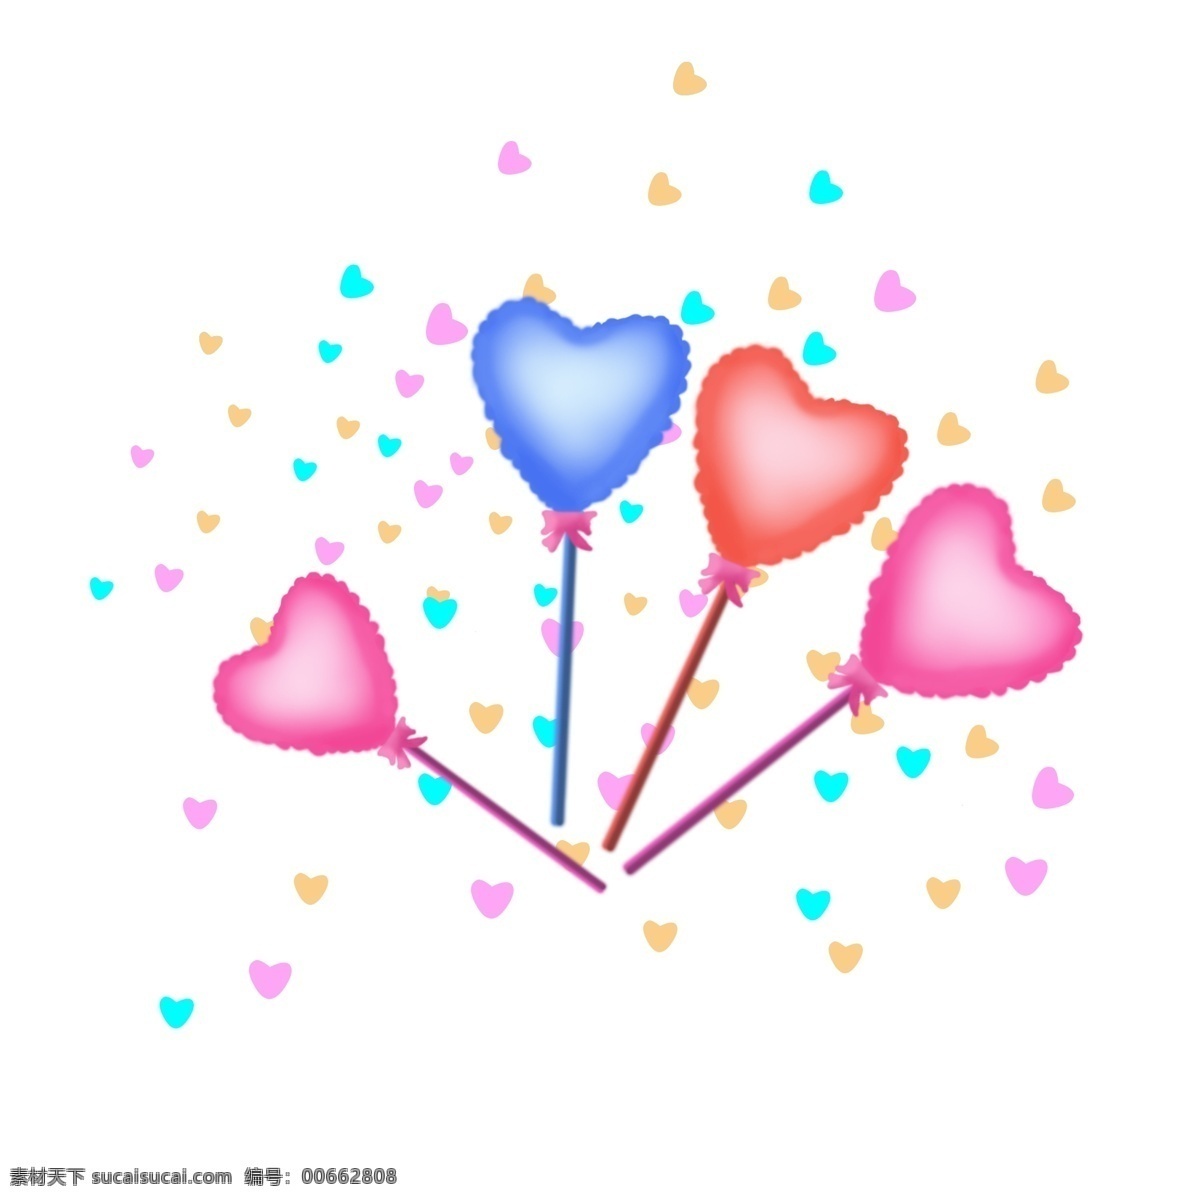 花边 彩色 告白 爱心 气球 心形 桃 心 装饰 结婚 生日派对 爱心气球 告白气球 桃心气球